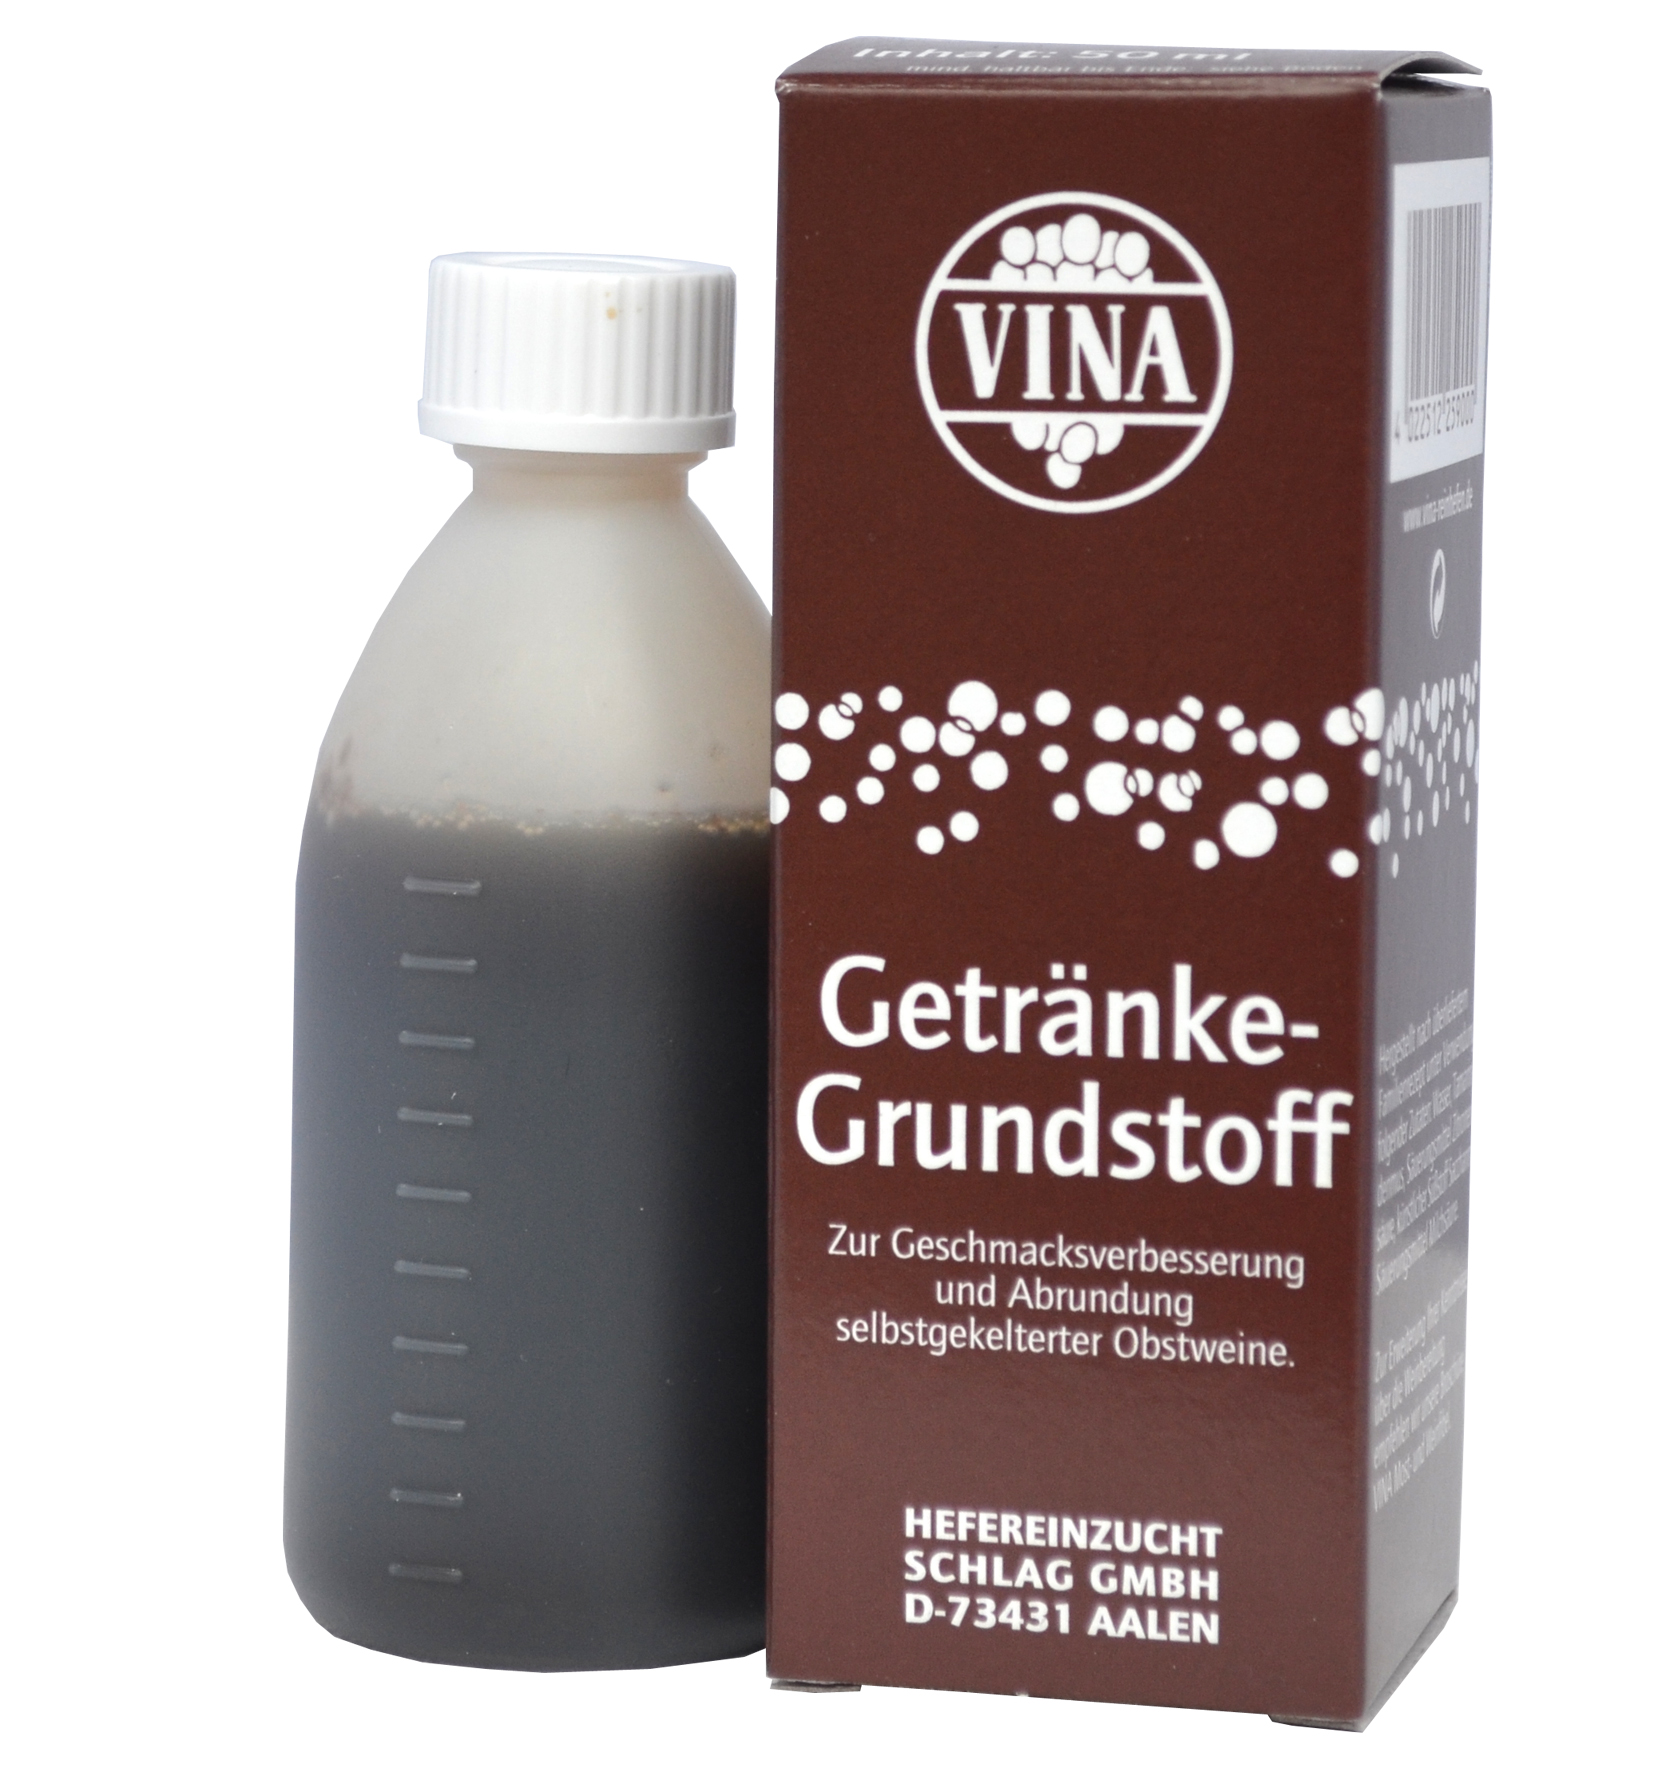 HEFEREINZUCHT SCHLAG GMBH Getränke - Grundstoff 50 ml 